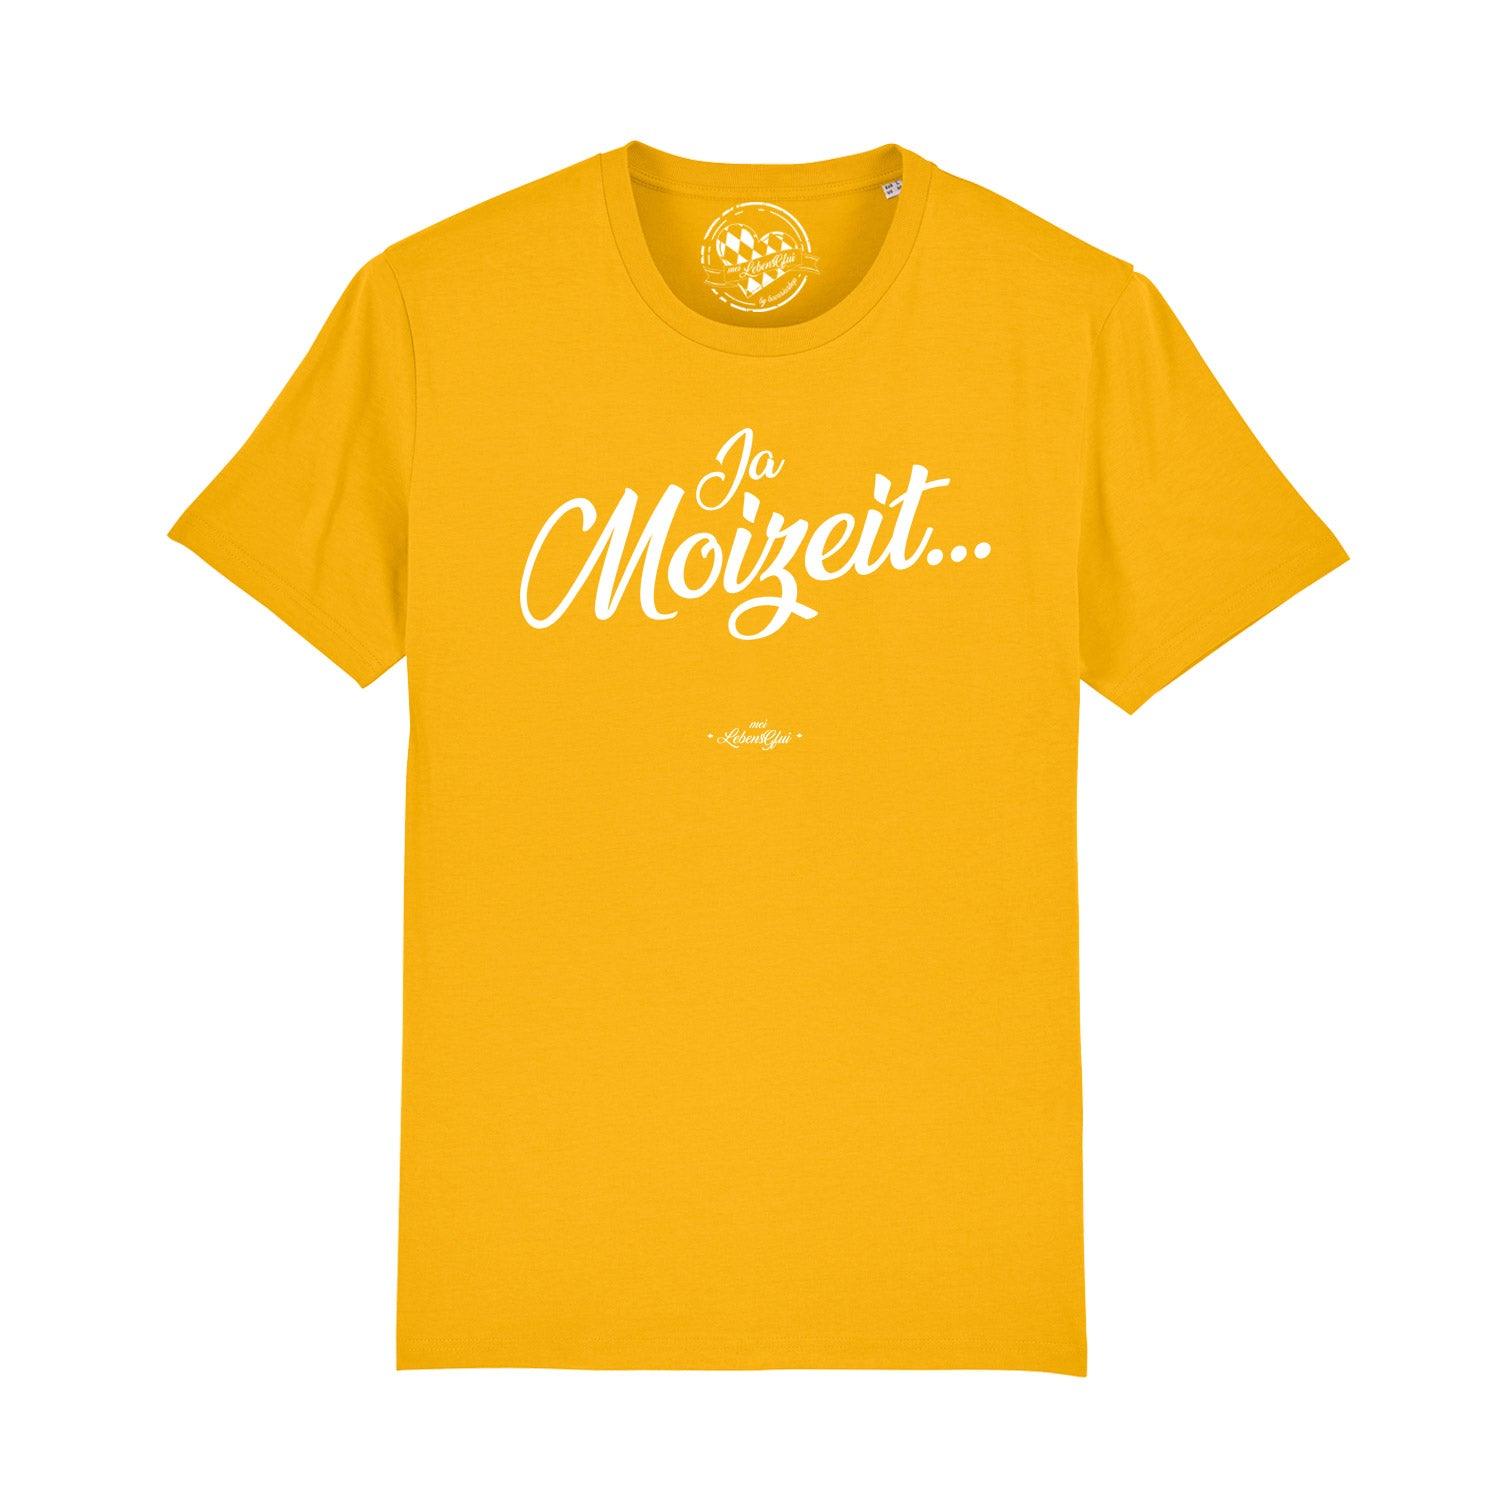 Herren T-Shirt "Ja Moizeit" - bavariashop - mei LebensGfui